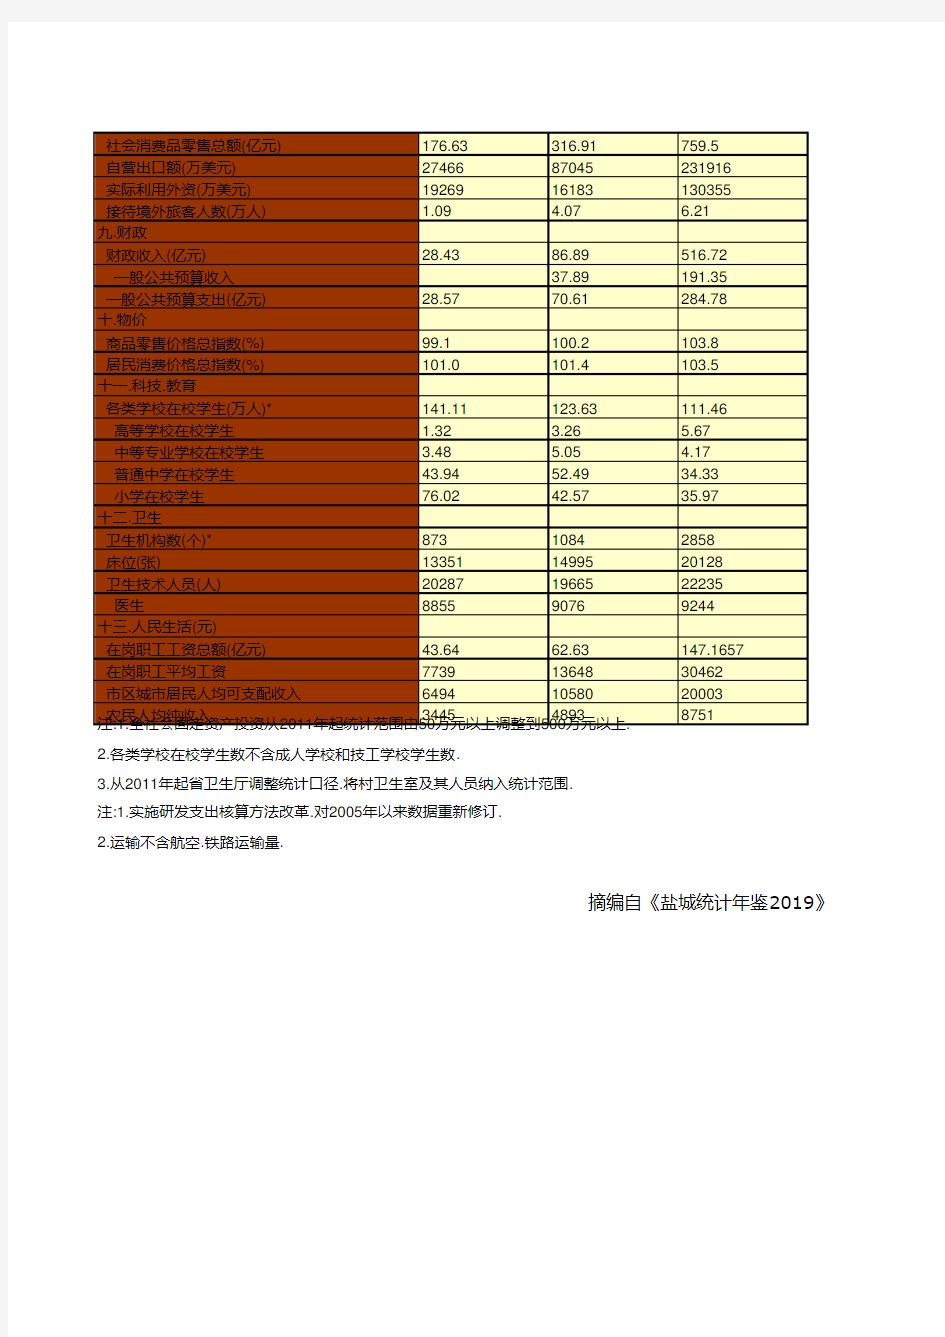 江苏省盐城市统计年鉴社会经济发展指标数据：国民经济与社会发展主要指标统计(2000-2018)